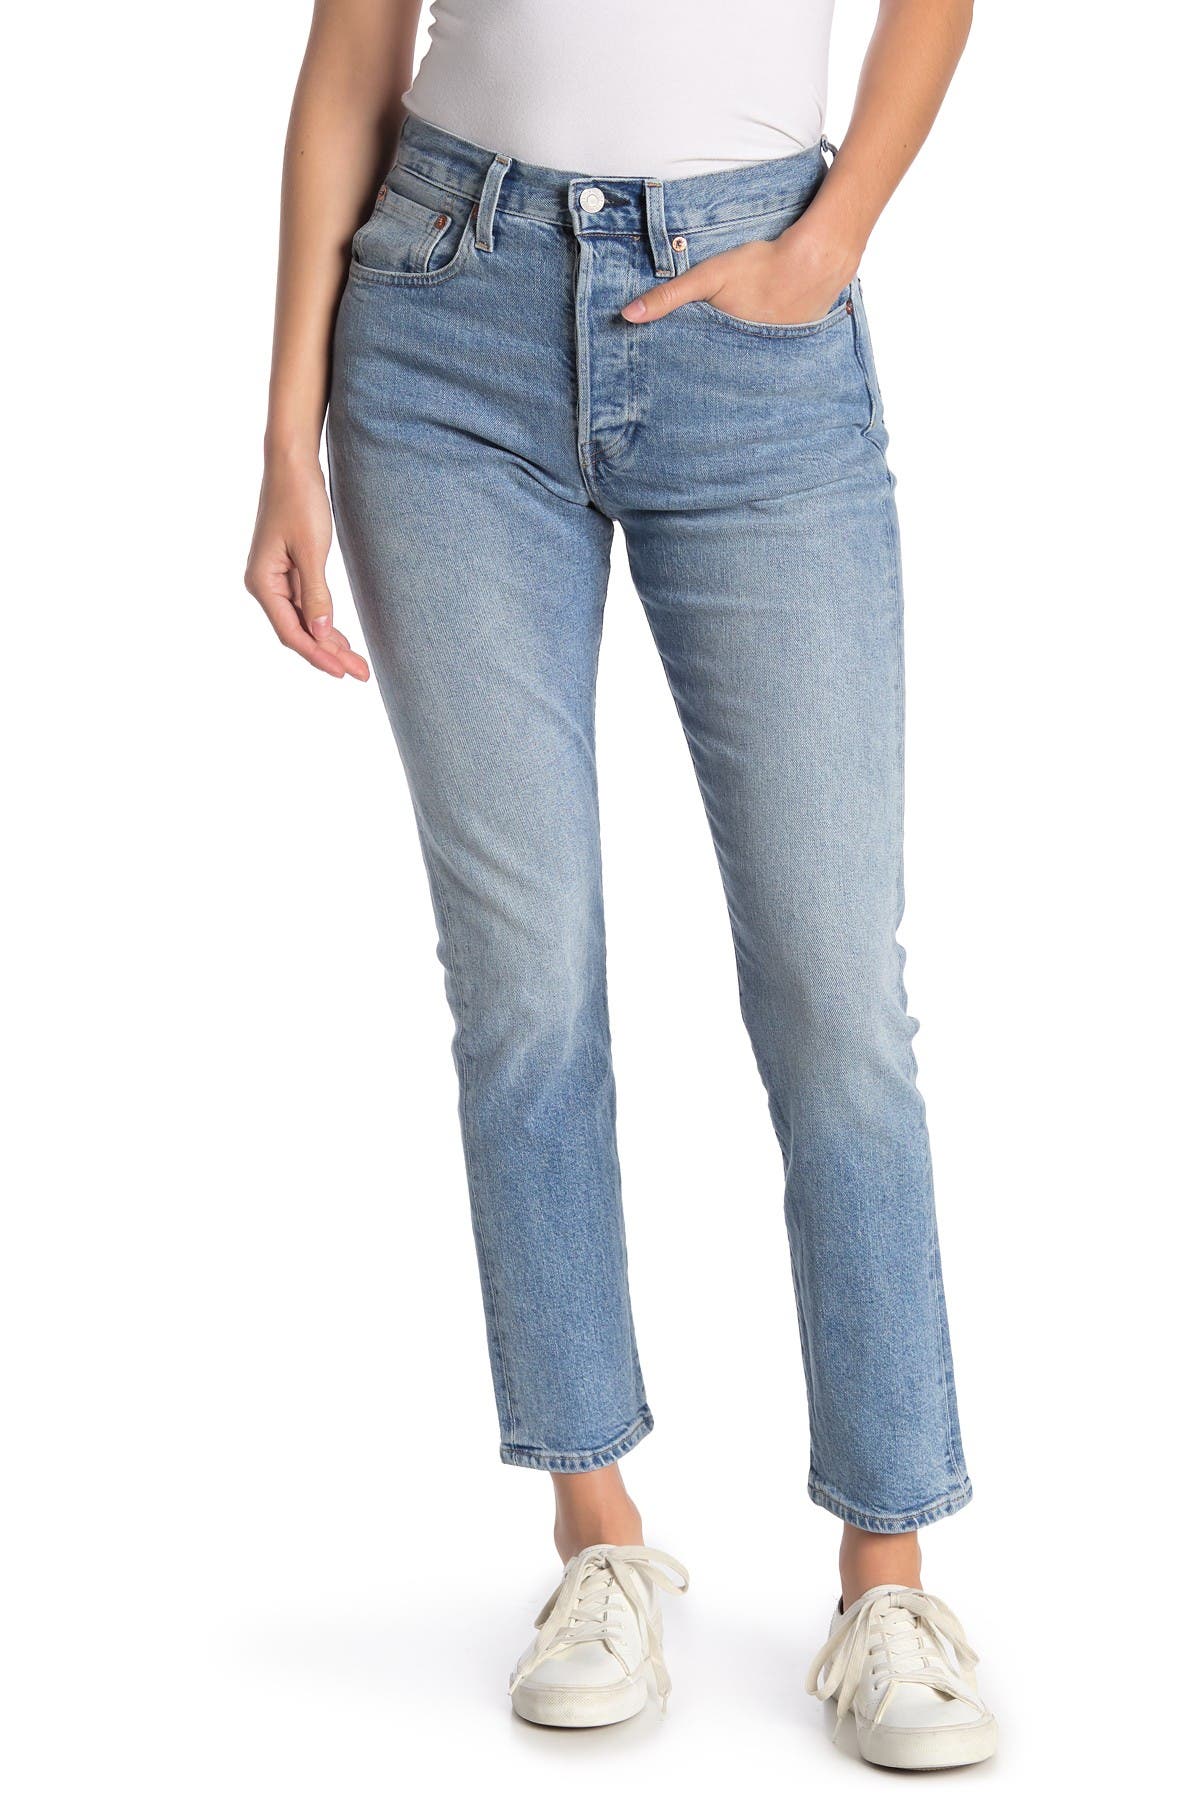 levis jeans 28 length